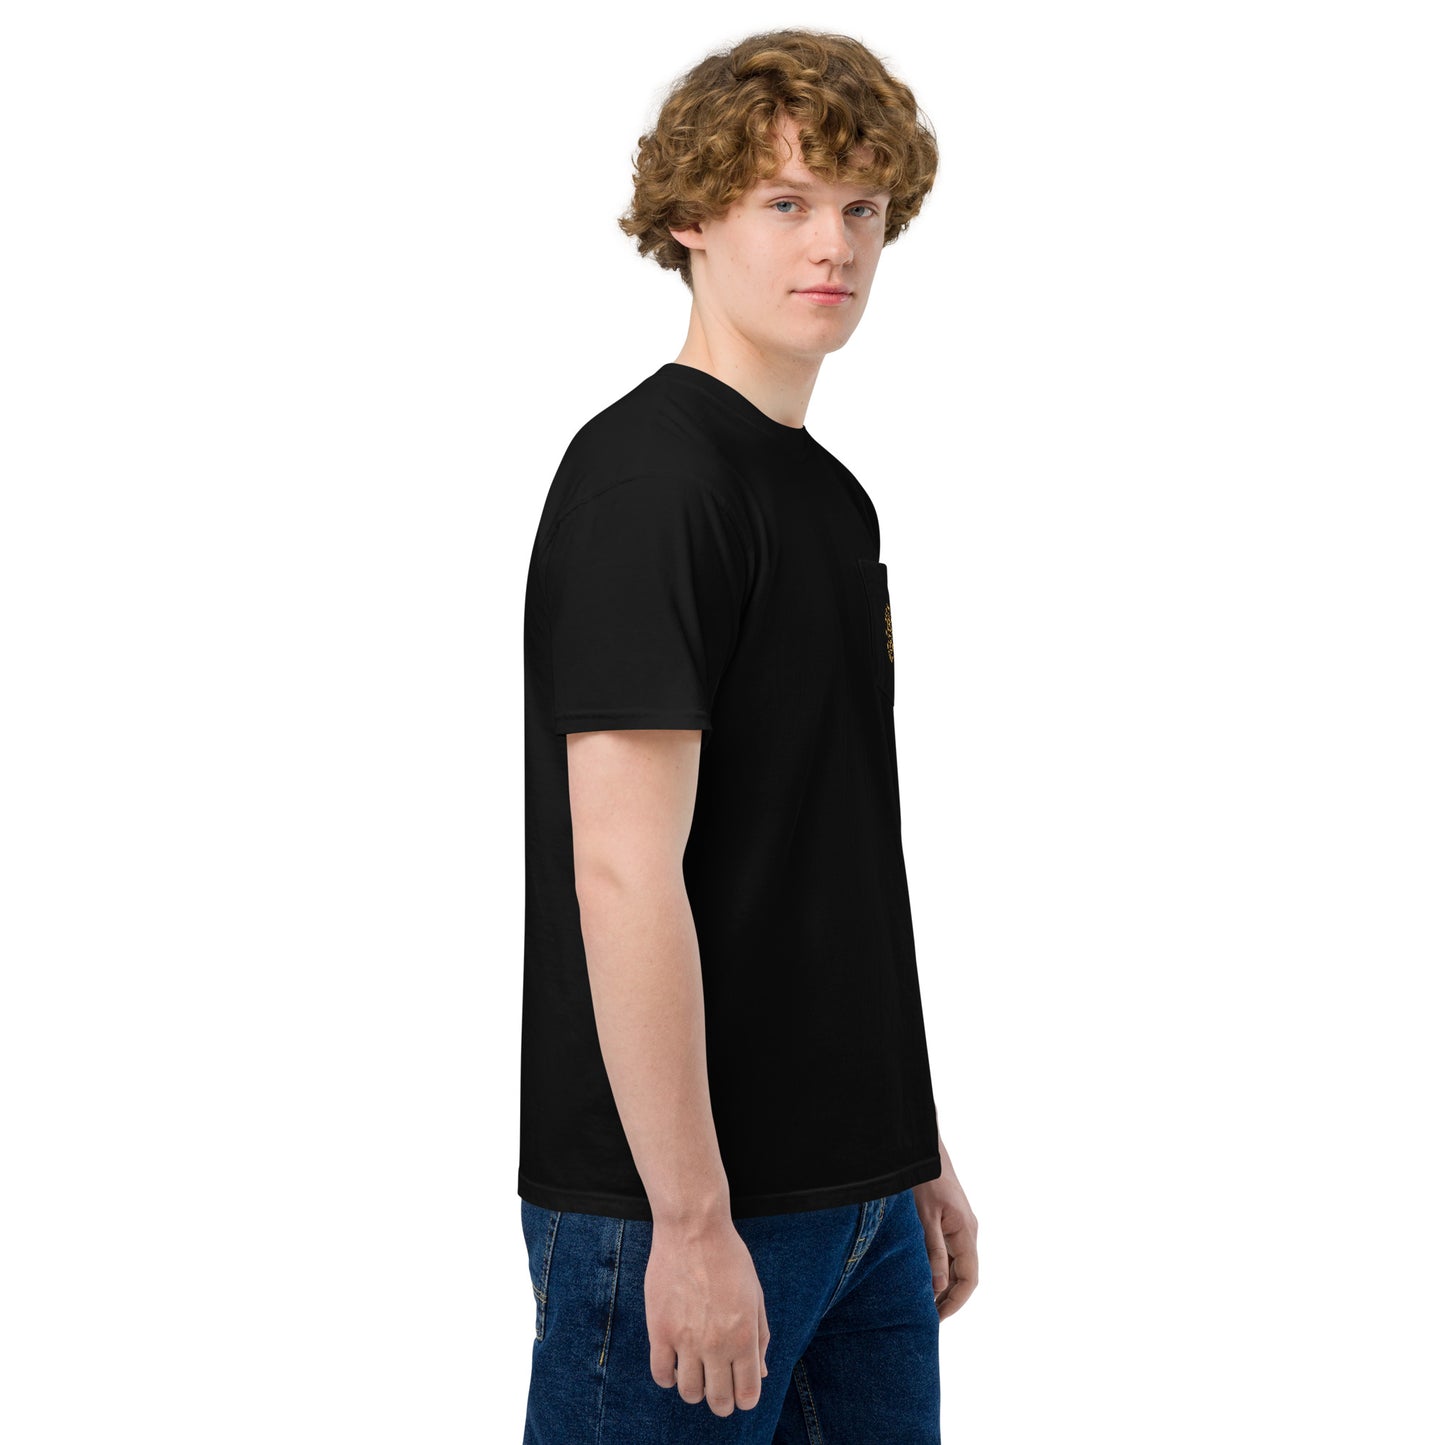 Sea Zephyr unisex garment-dyed pocket t-shirt - black